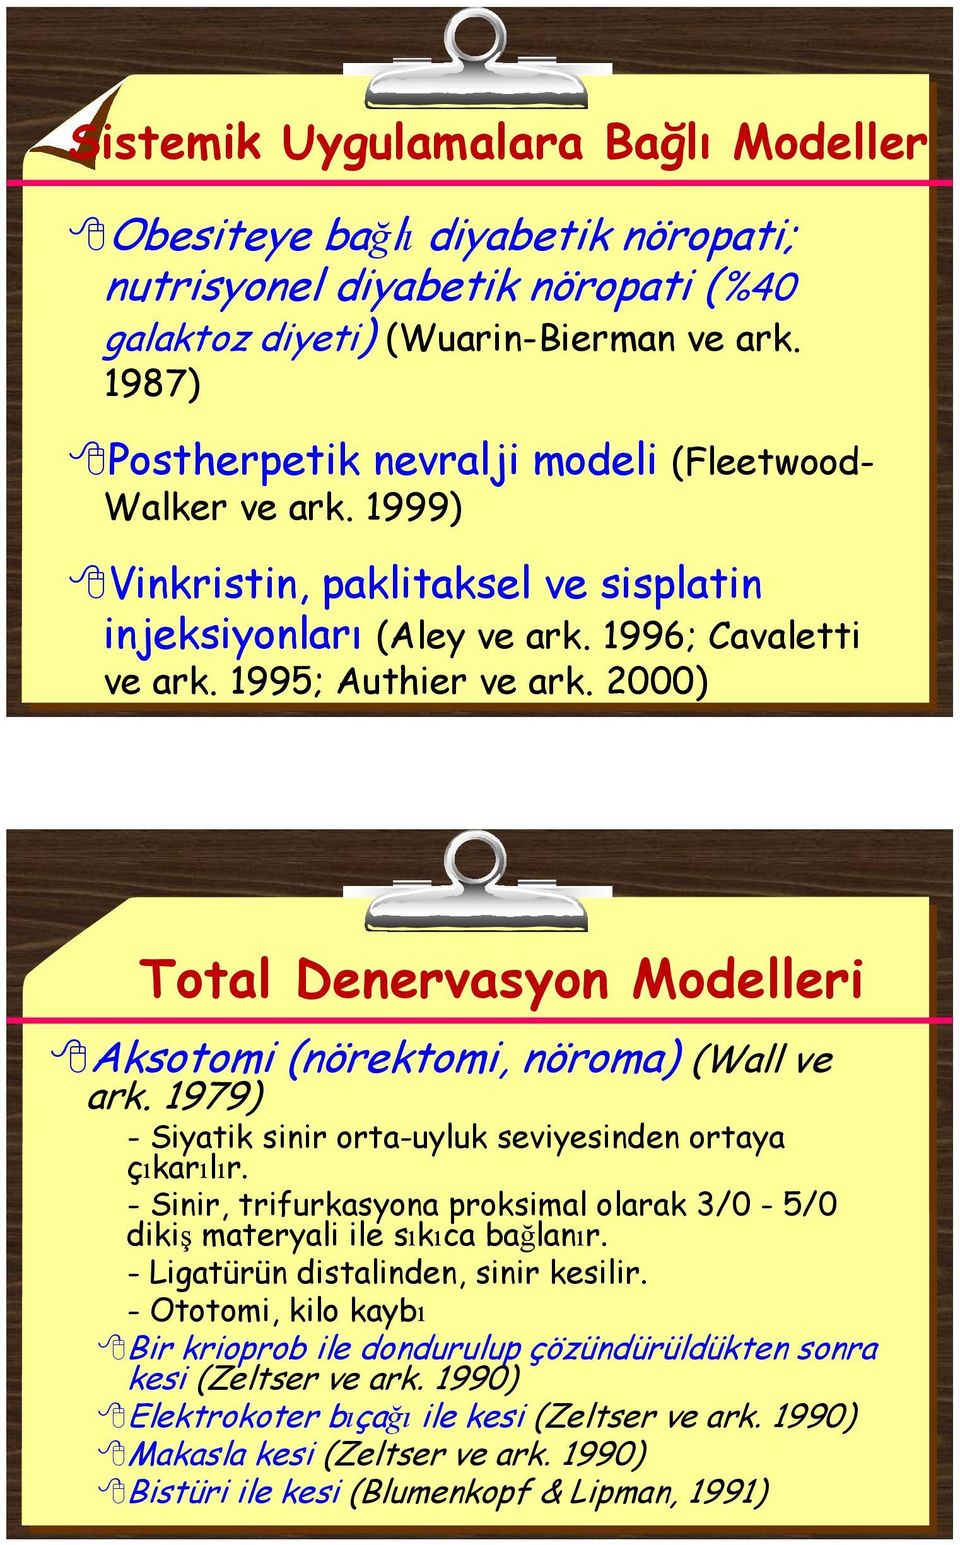 2000) Total Denervasyon Modelleri Aksotomi (nörektomi, nöroma) (Wall ve ark. 1979) - Siyatik sinir orta-uyluk seviyesinden ortaya çıkarılır.